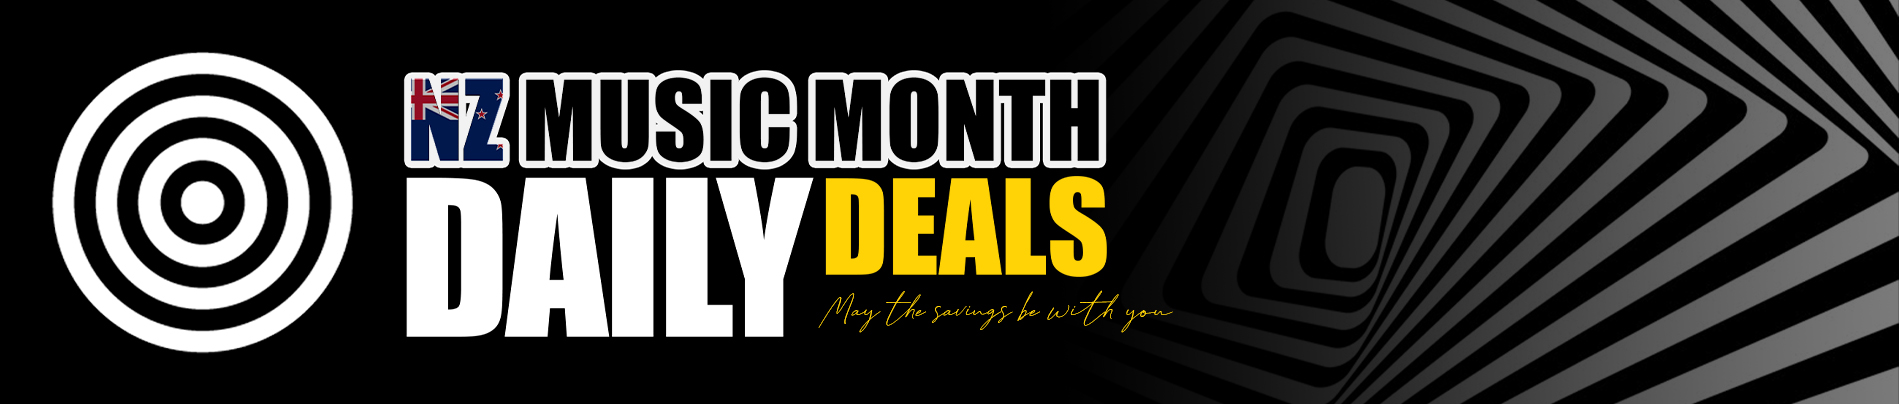 NZ Music Month Daily Deals